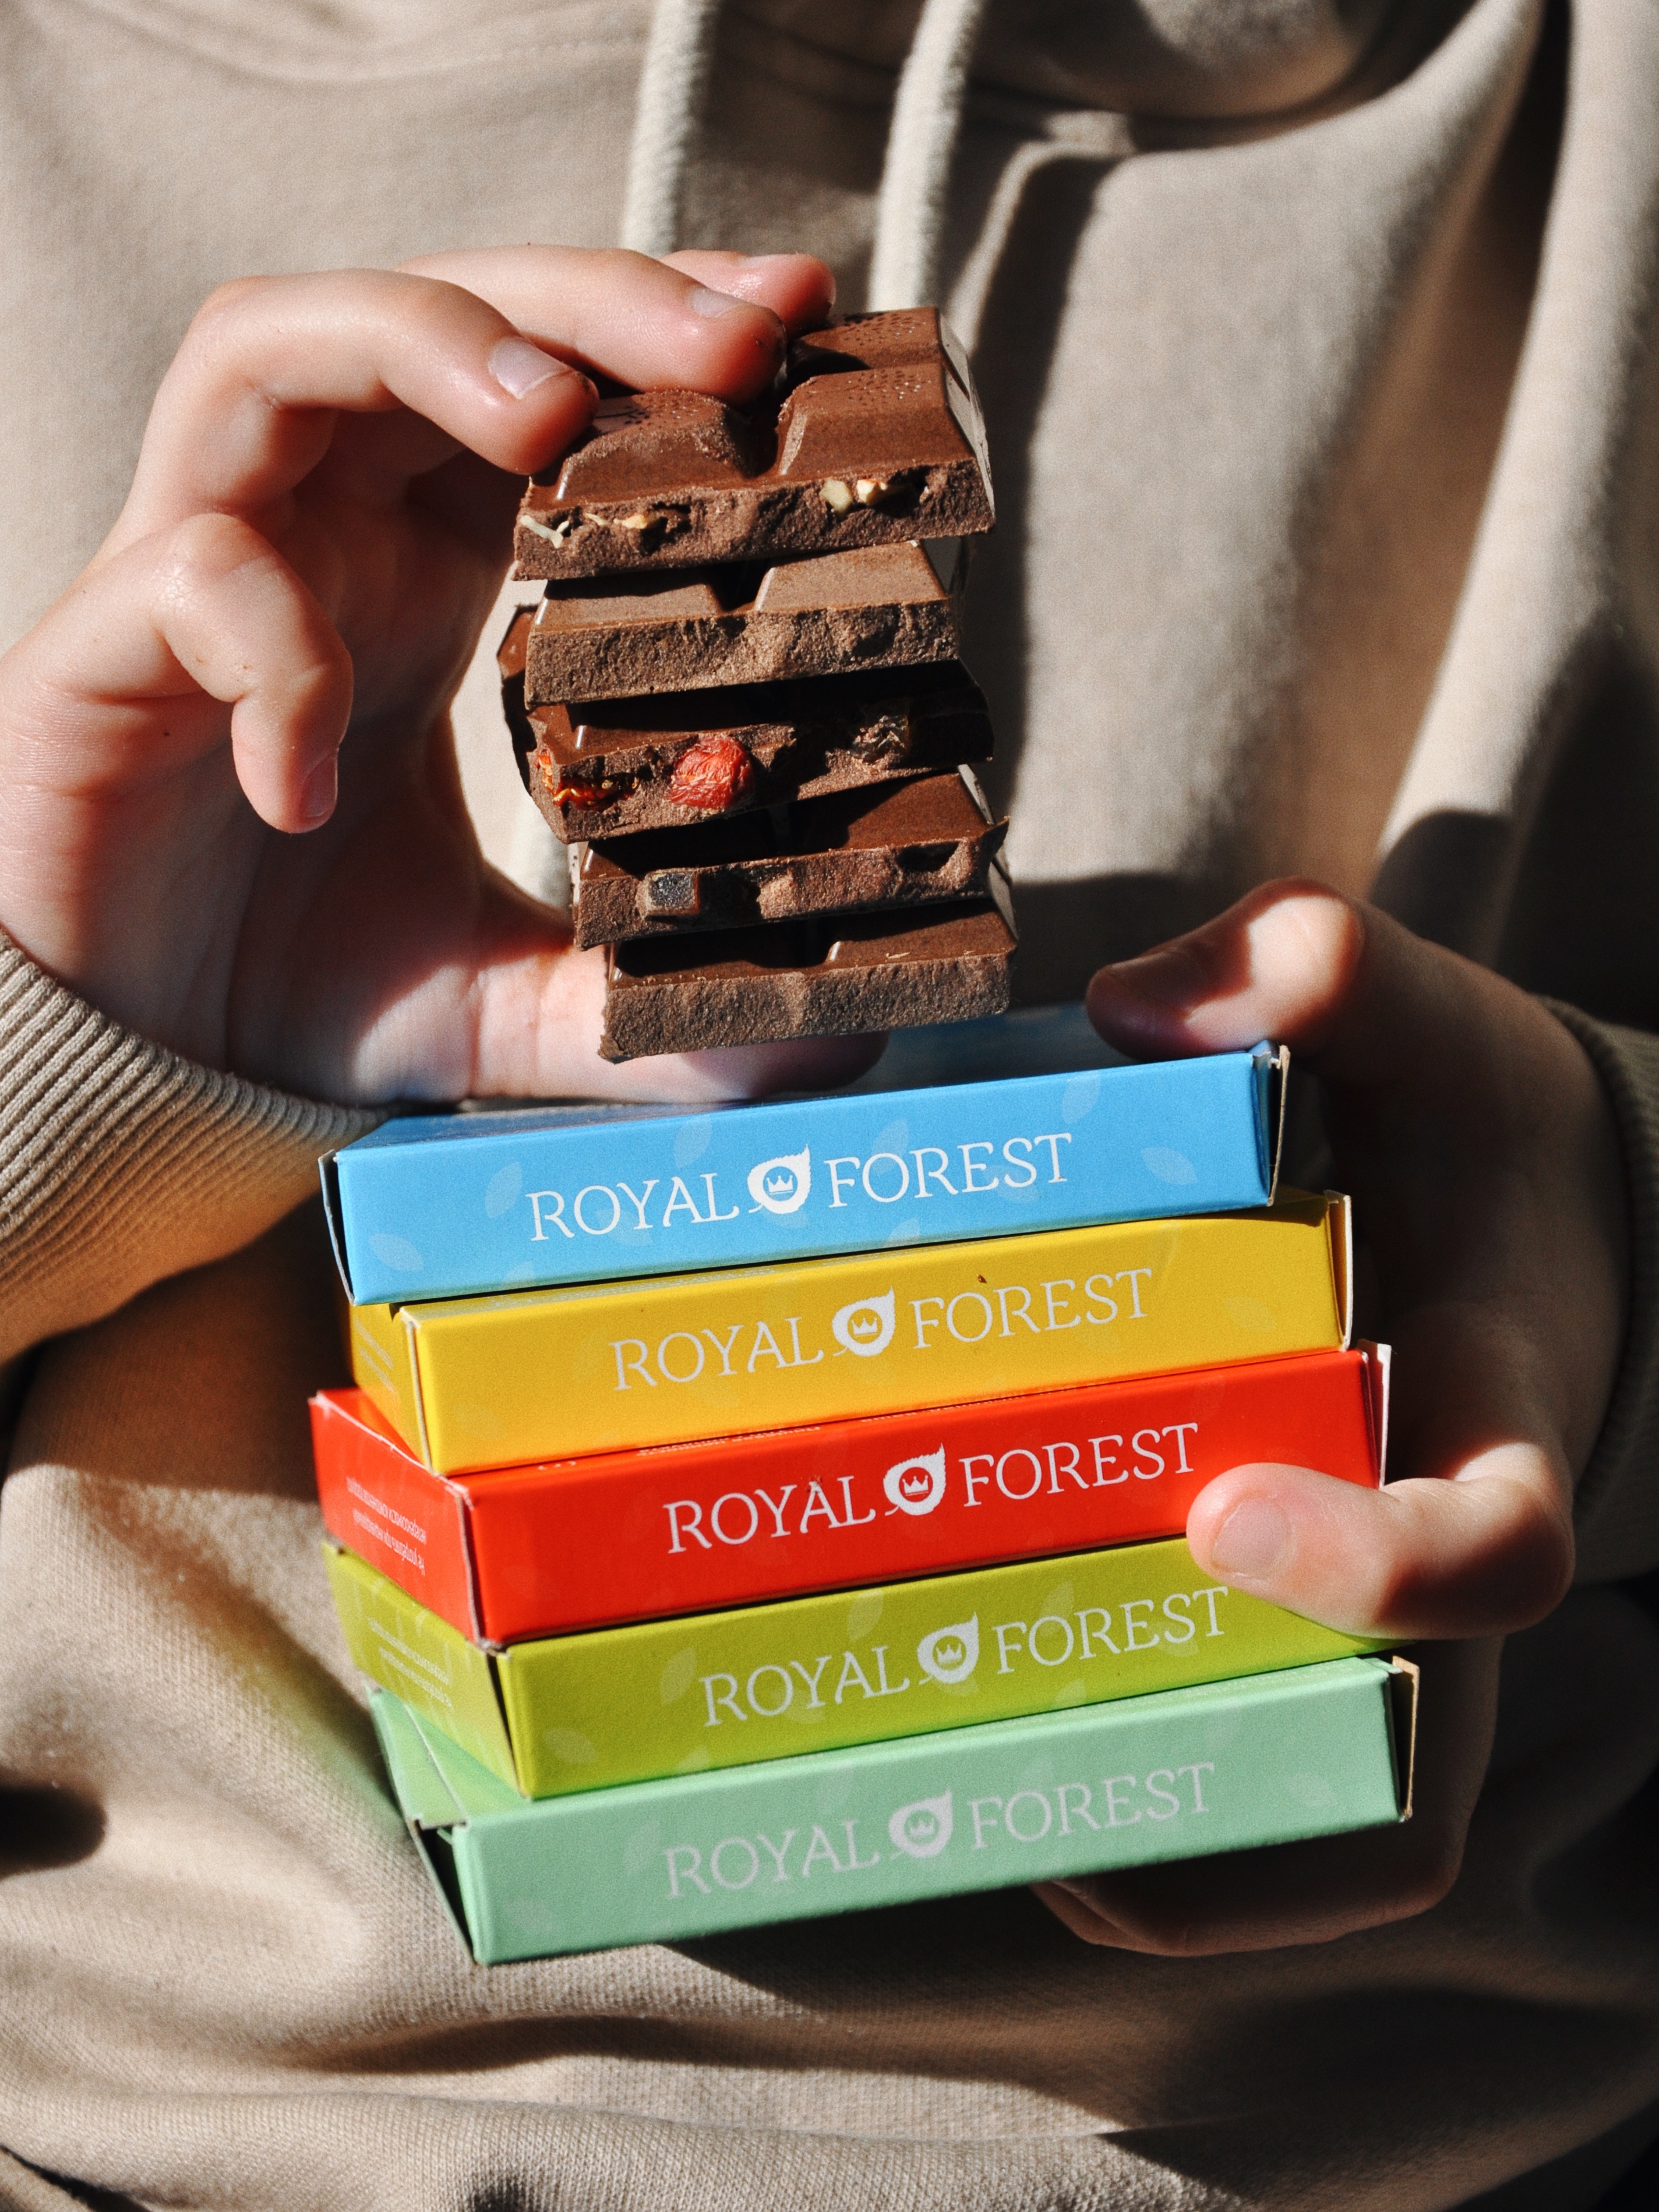 Шоколад из кэроба Royal Forest